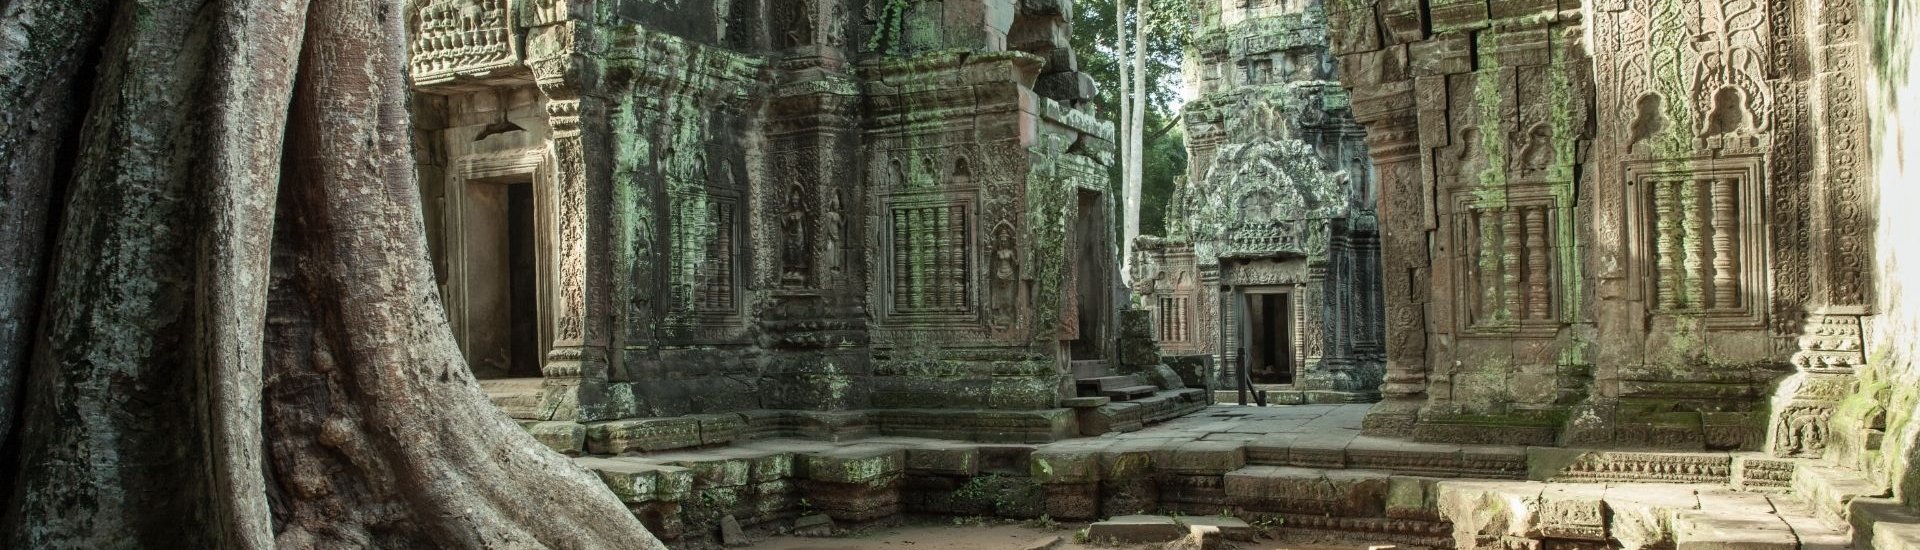 tree temple